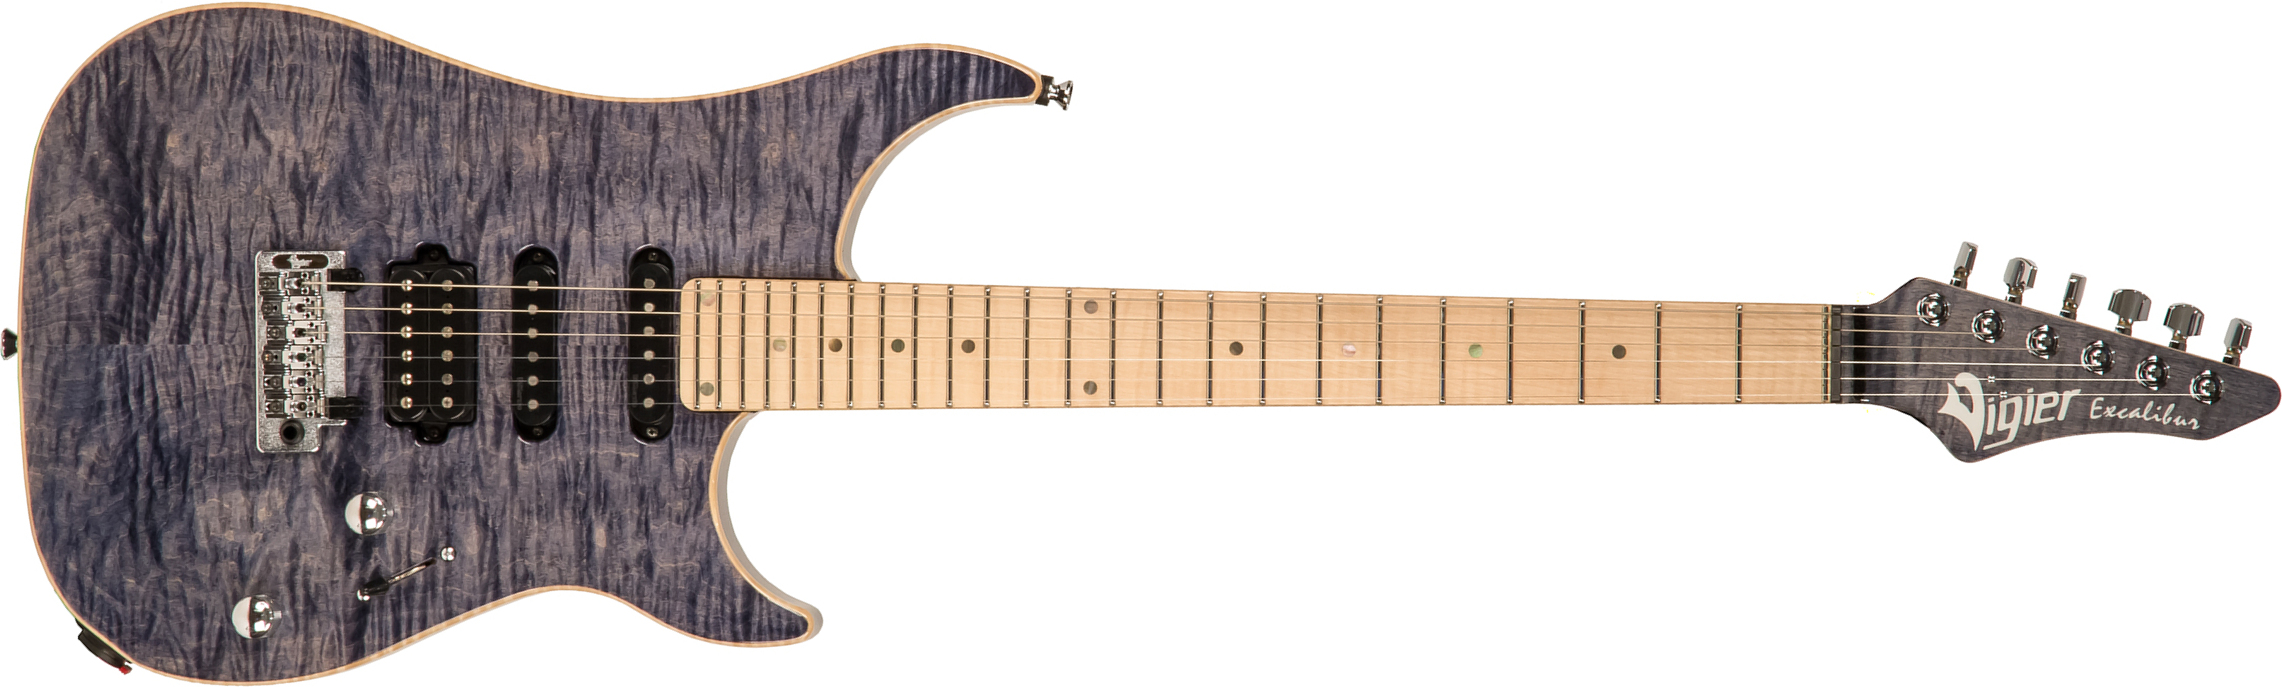 Vigier Excalibur Ultra Blues Hss Trem Mn - Light Sapphire - Str shape electric guitar - Main picture